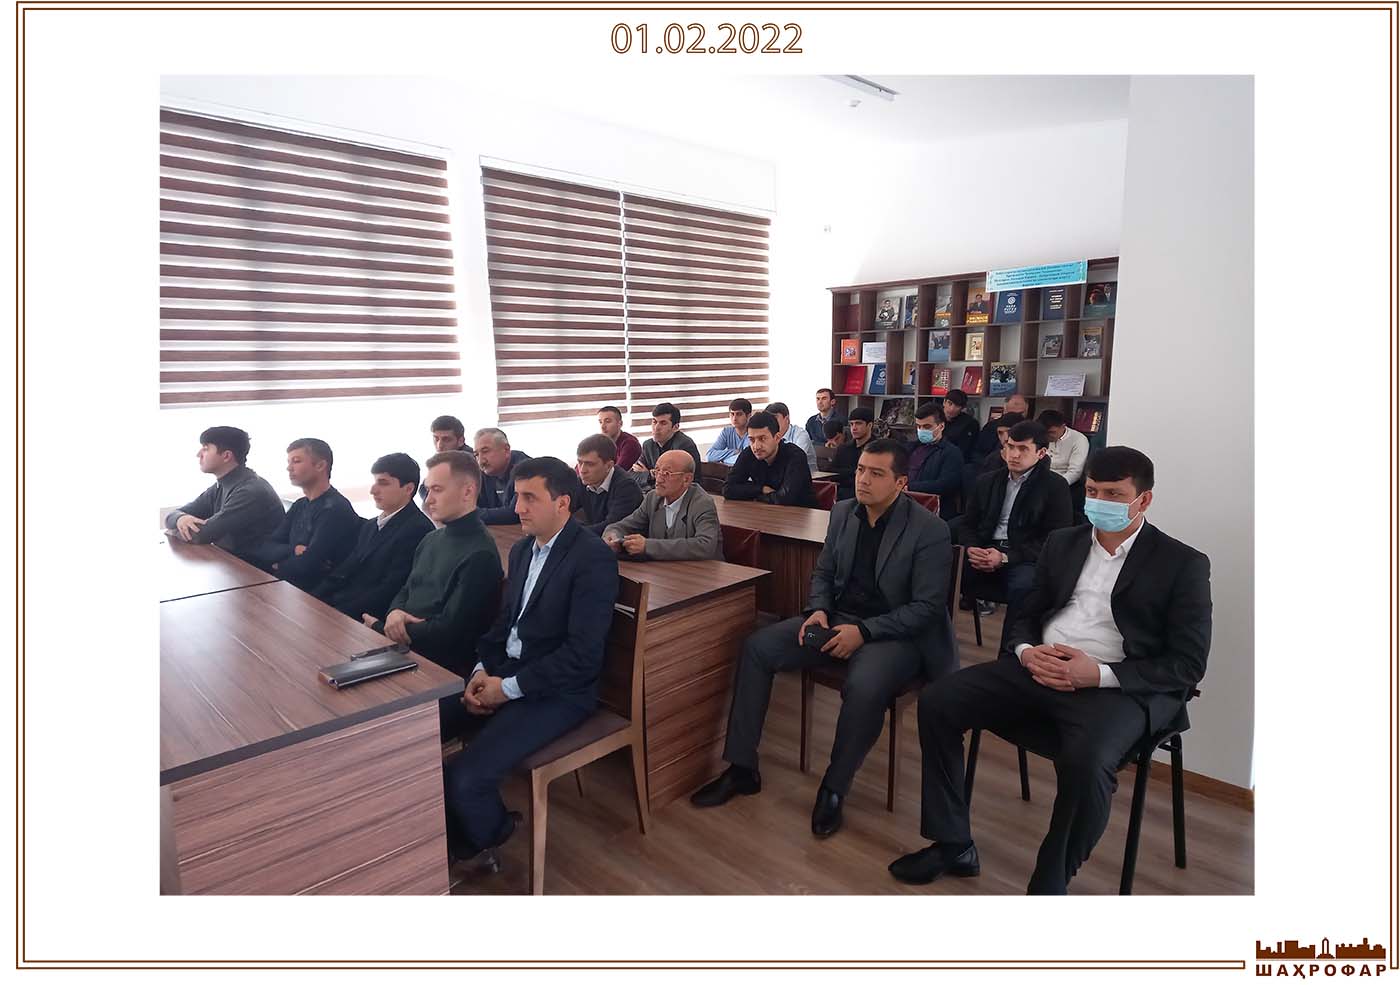 Вы сейчас просматриваете Собрания о планах по архитектуре и развитию Республики Таджикистан в ОАО «Шахрофар».